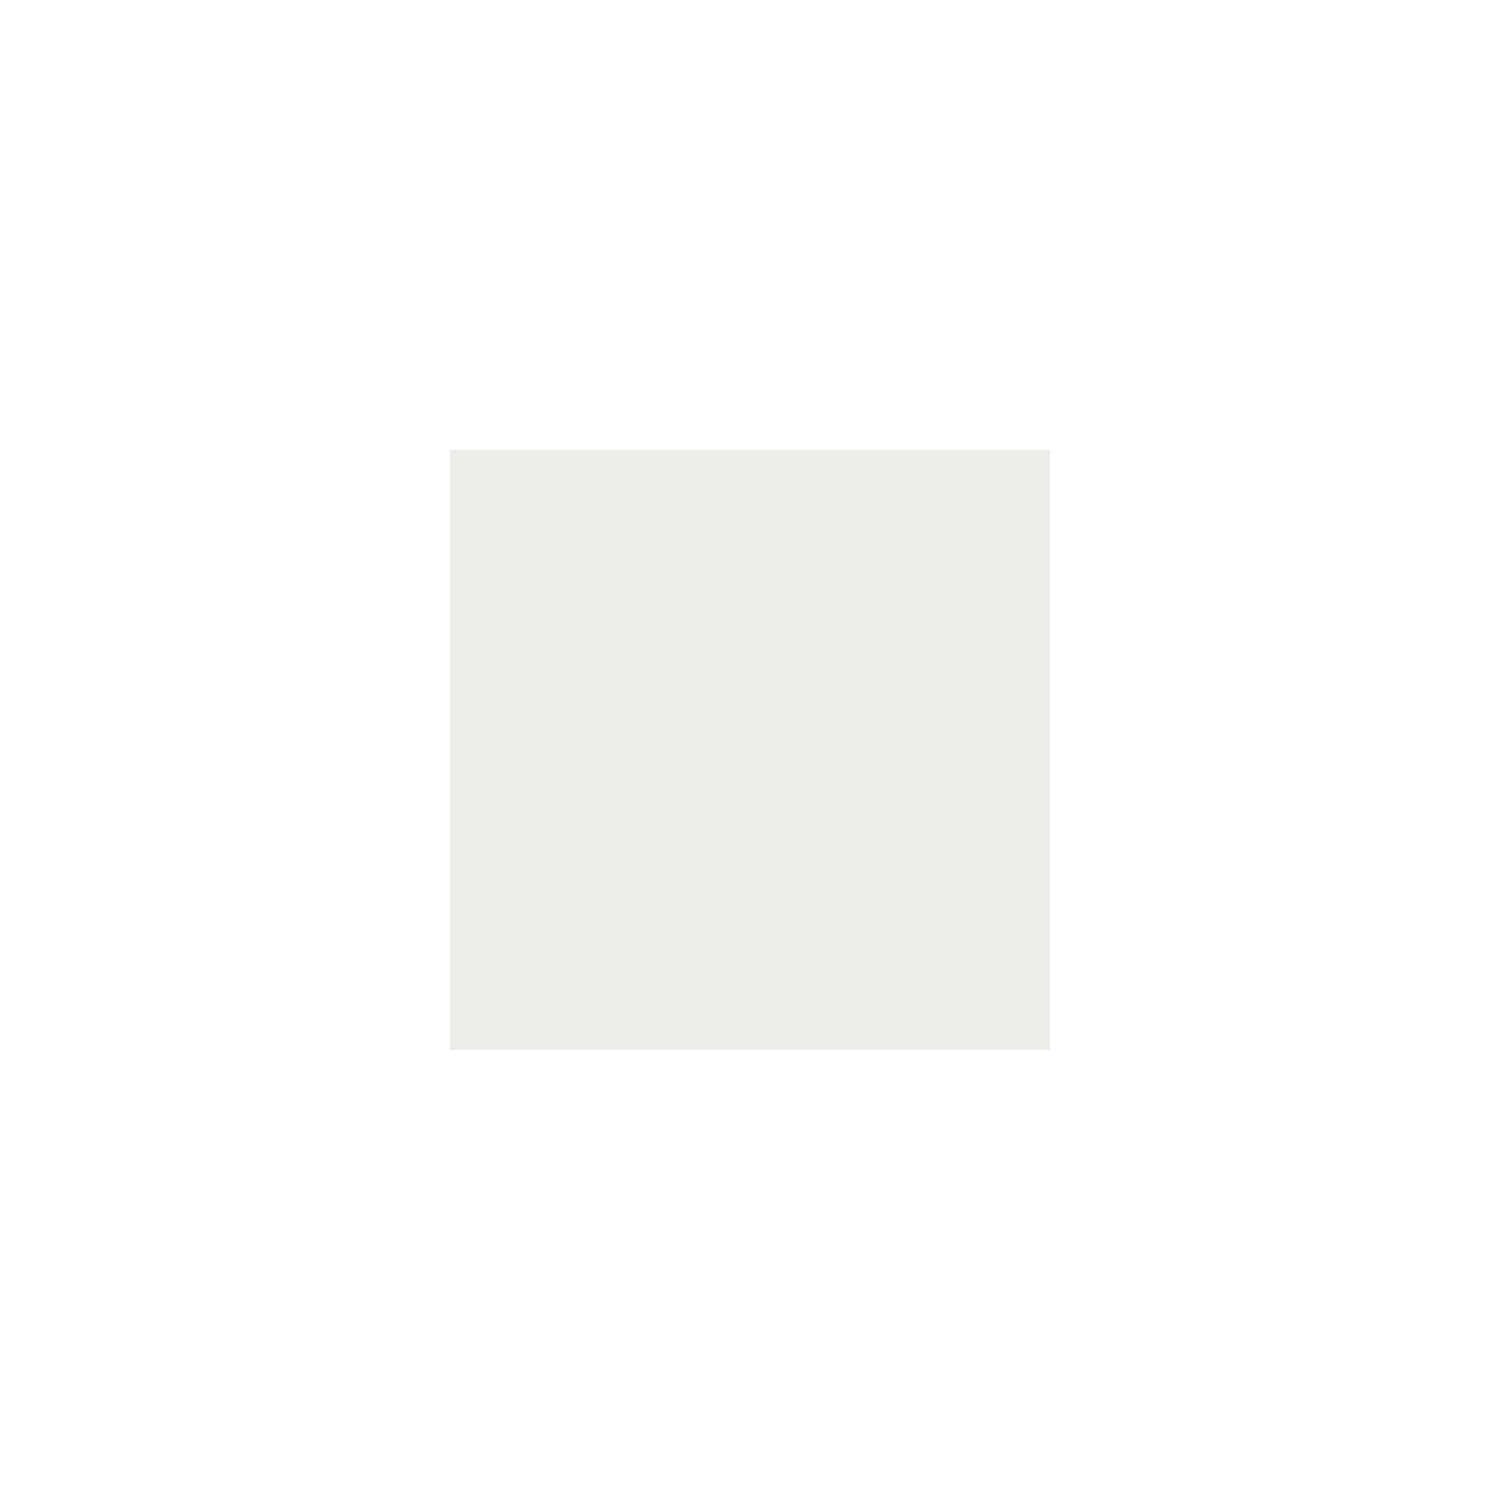 Itamoby Consolle allungabile 90x40/196 cm Diago Small Bianco Frassino telaio Bianco